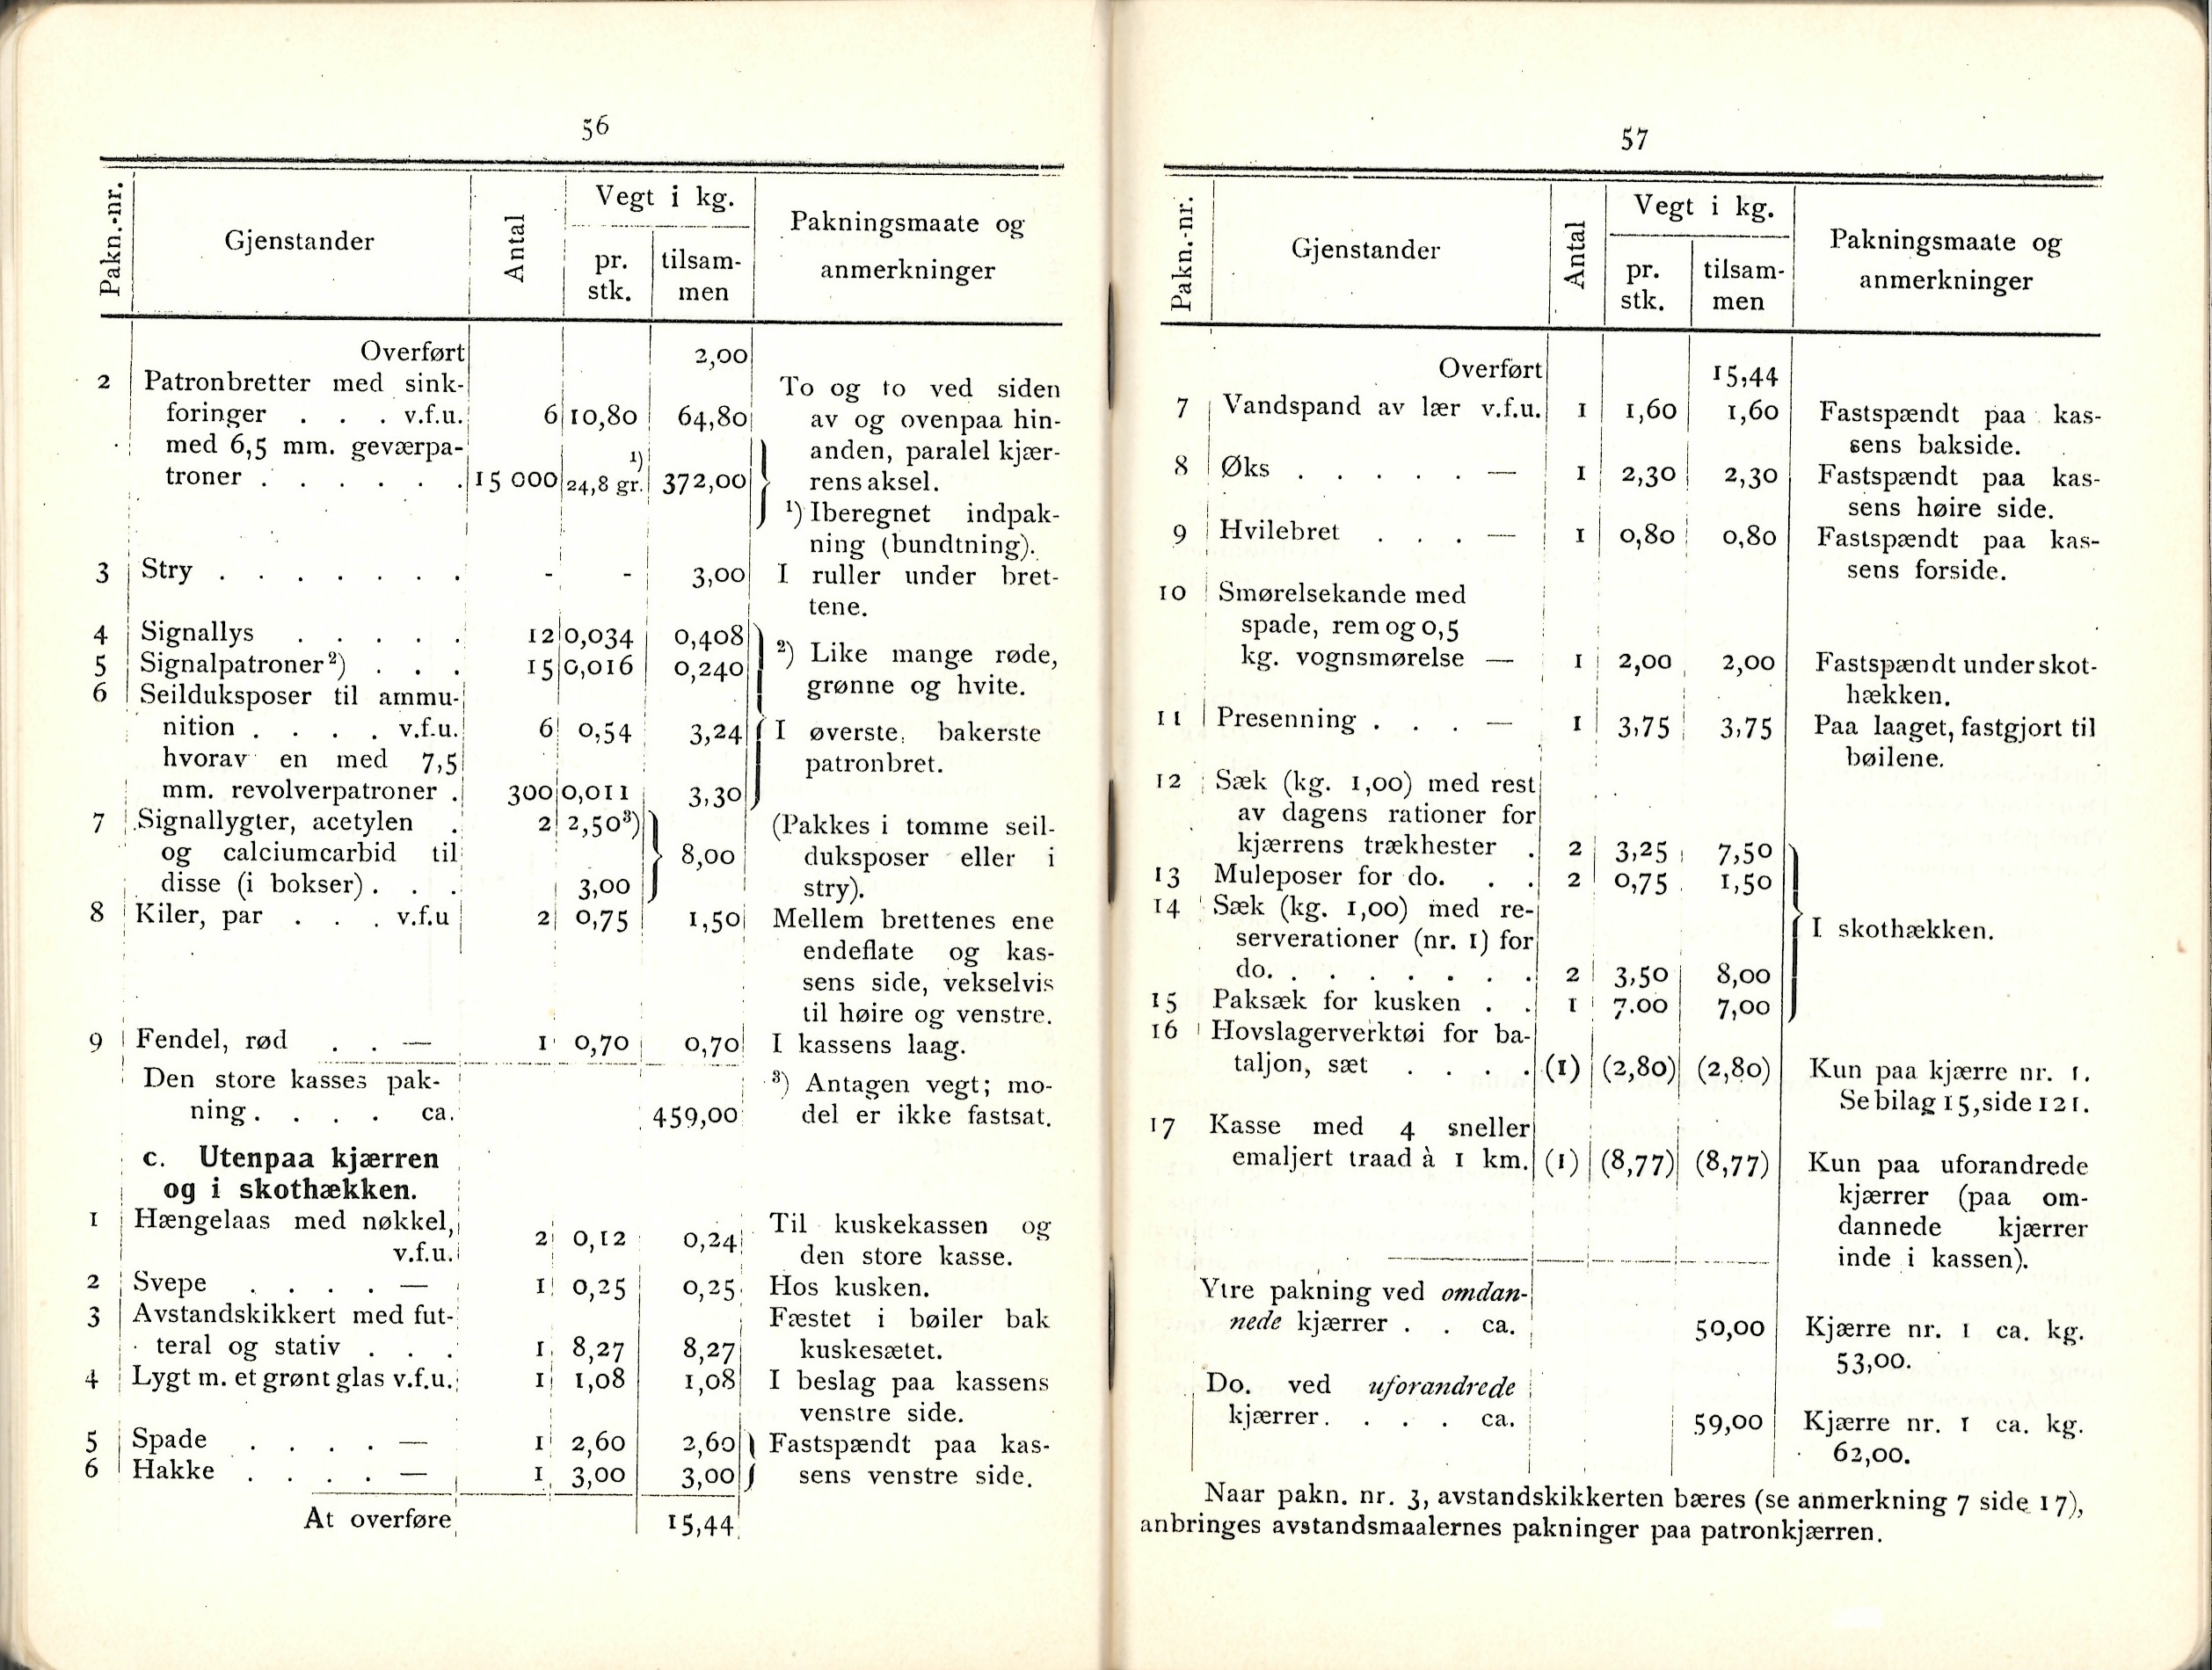 ./doc/reglement/Utrustning/Utrustnings-og-Pakningsplan-1917-13.jpg